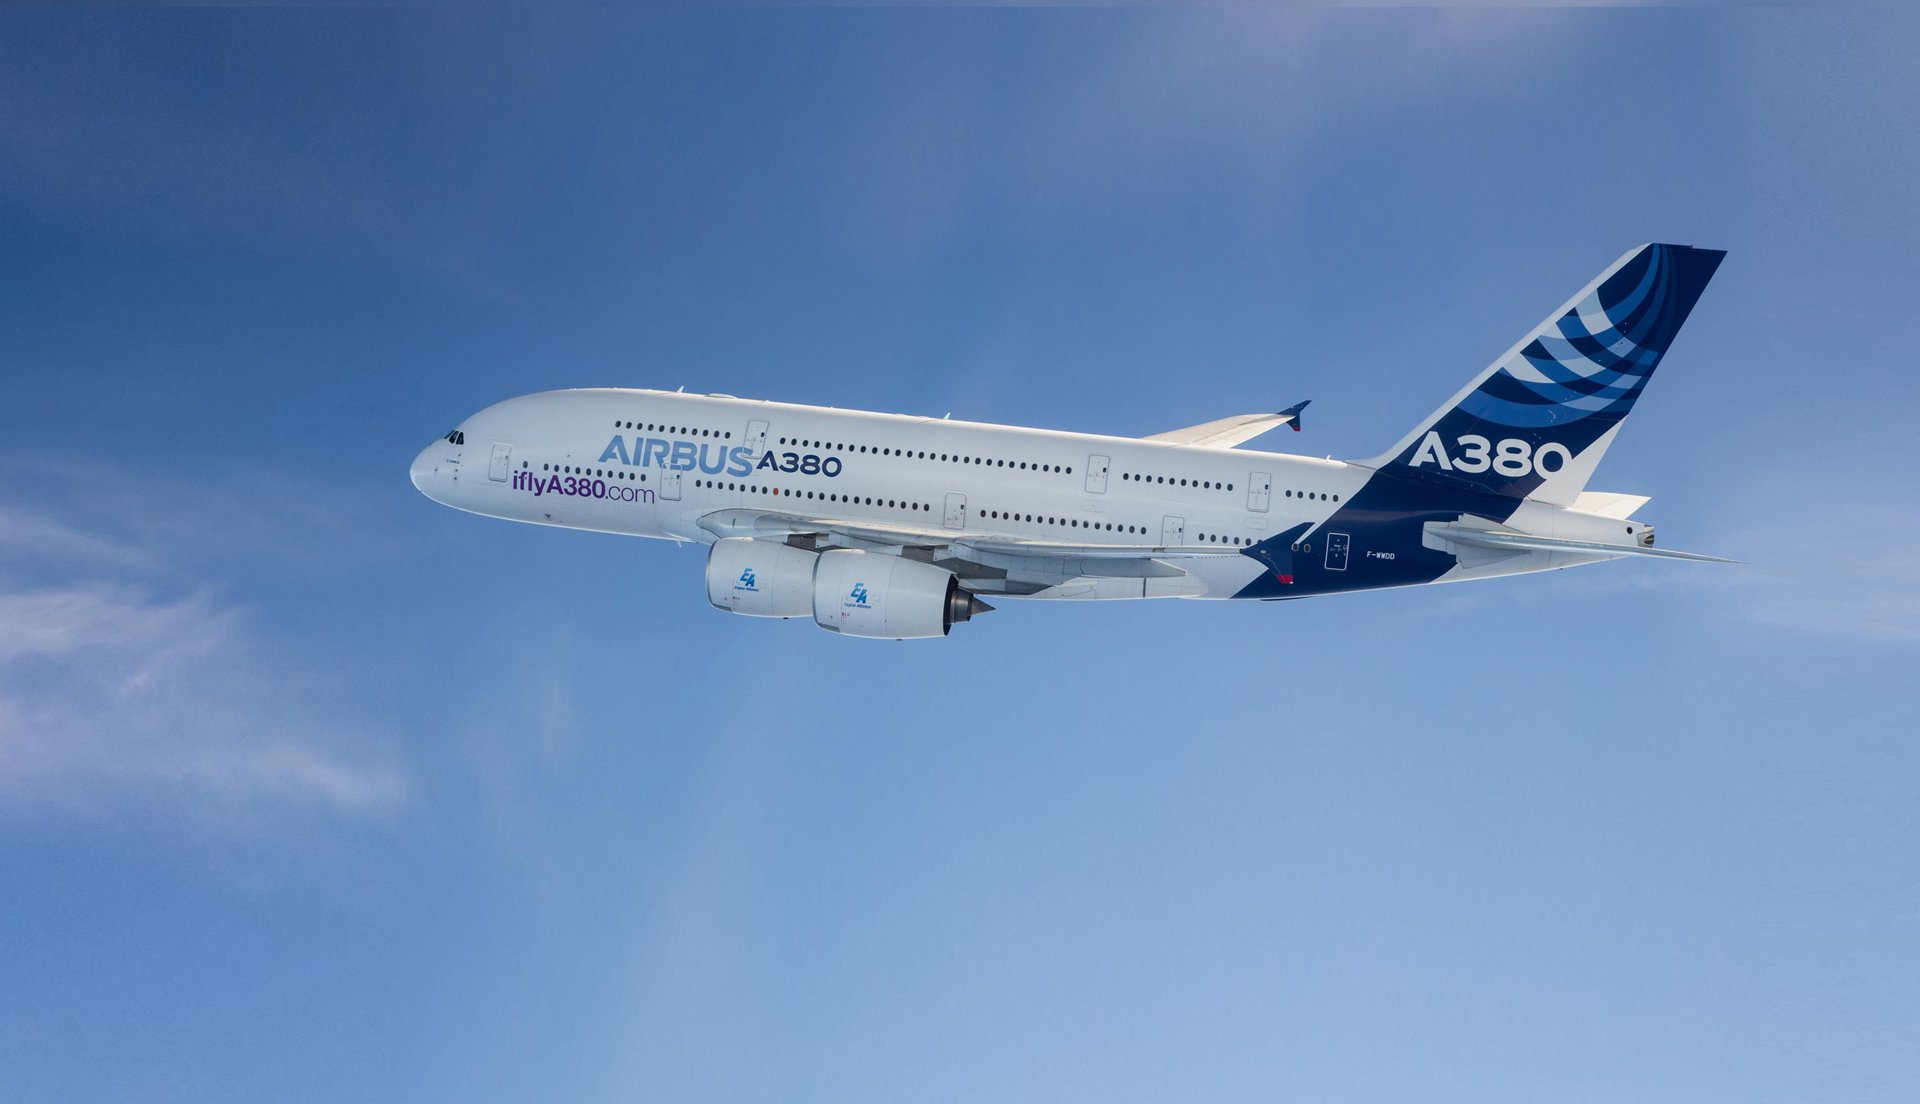 A380 - Passenger aircraft - Airbus